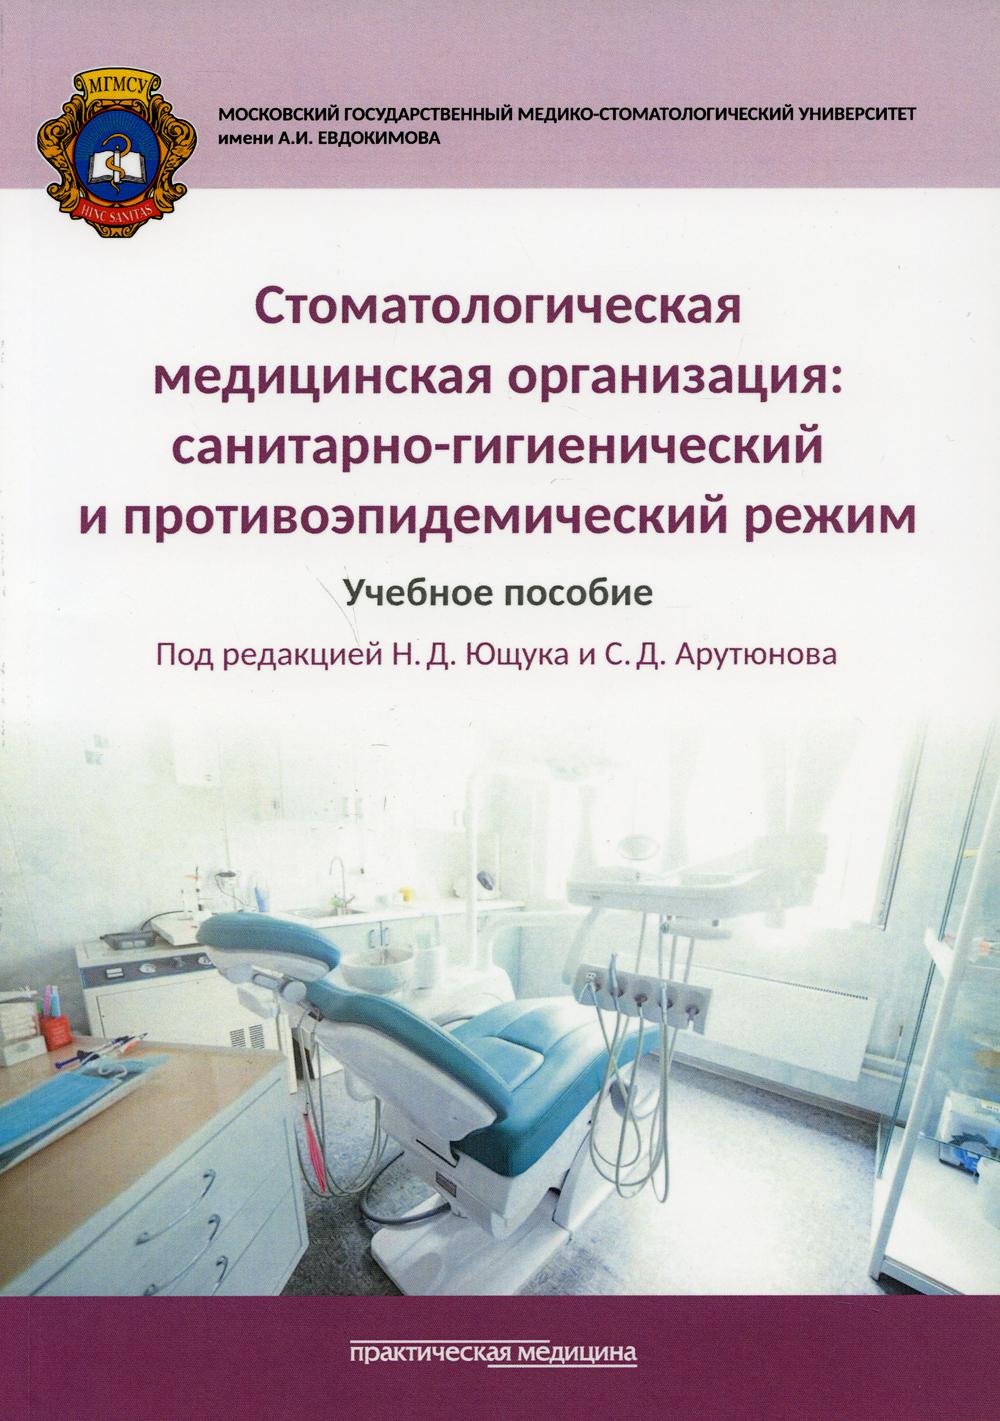 фото Книга стоматологическая медицинская организация: санитарно-гигиенический и противоэпиде... практическая медицина